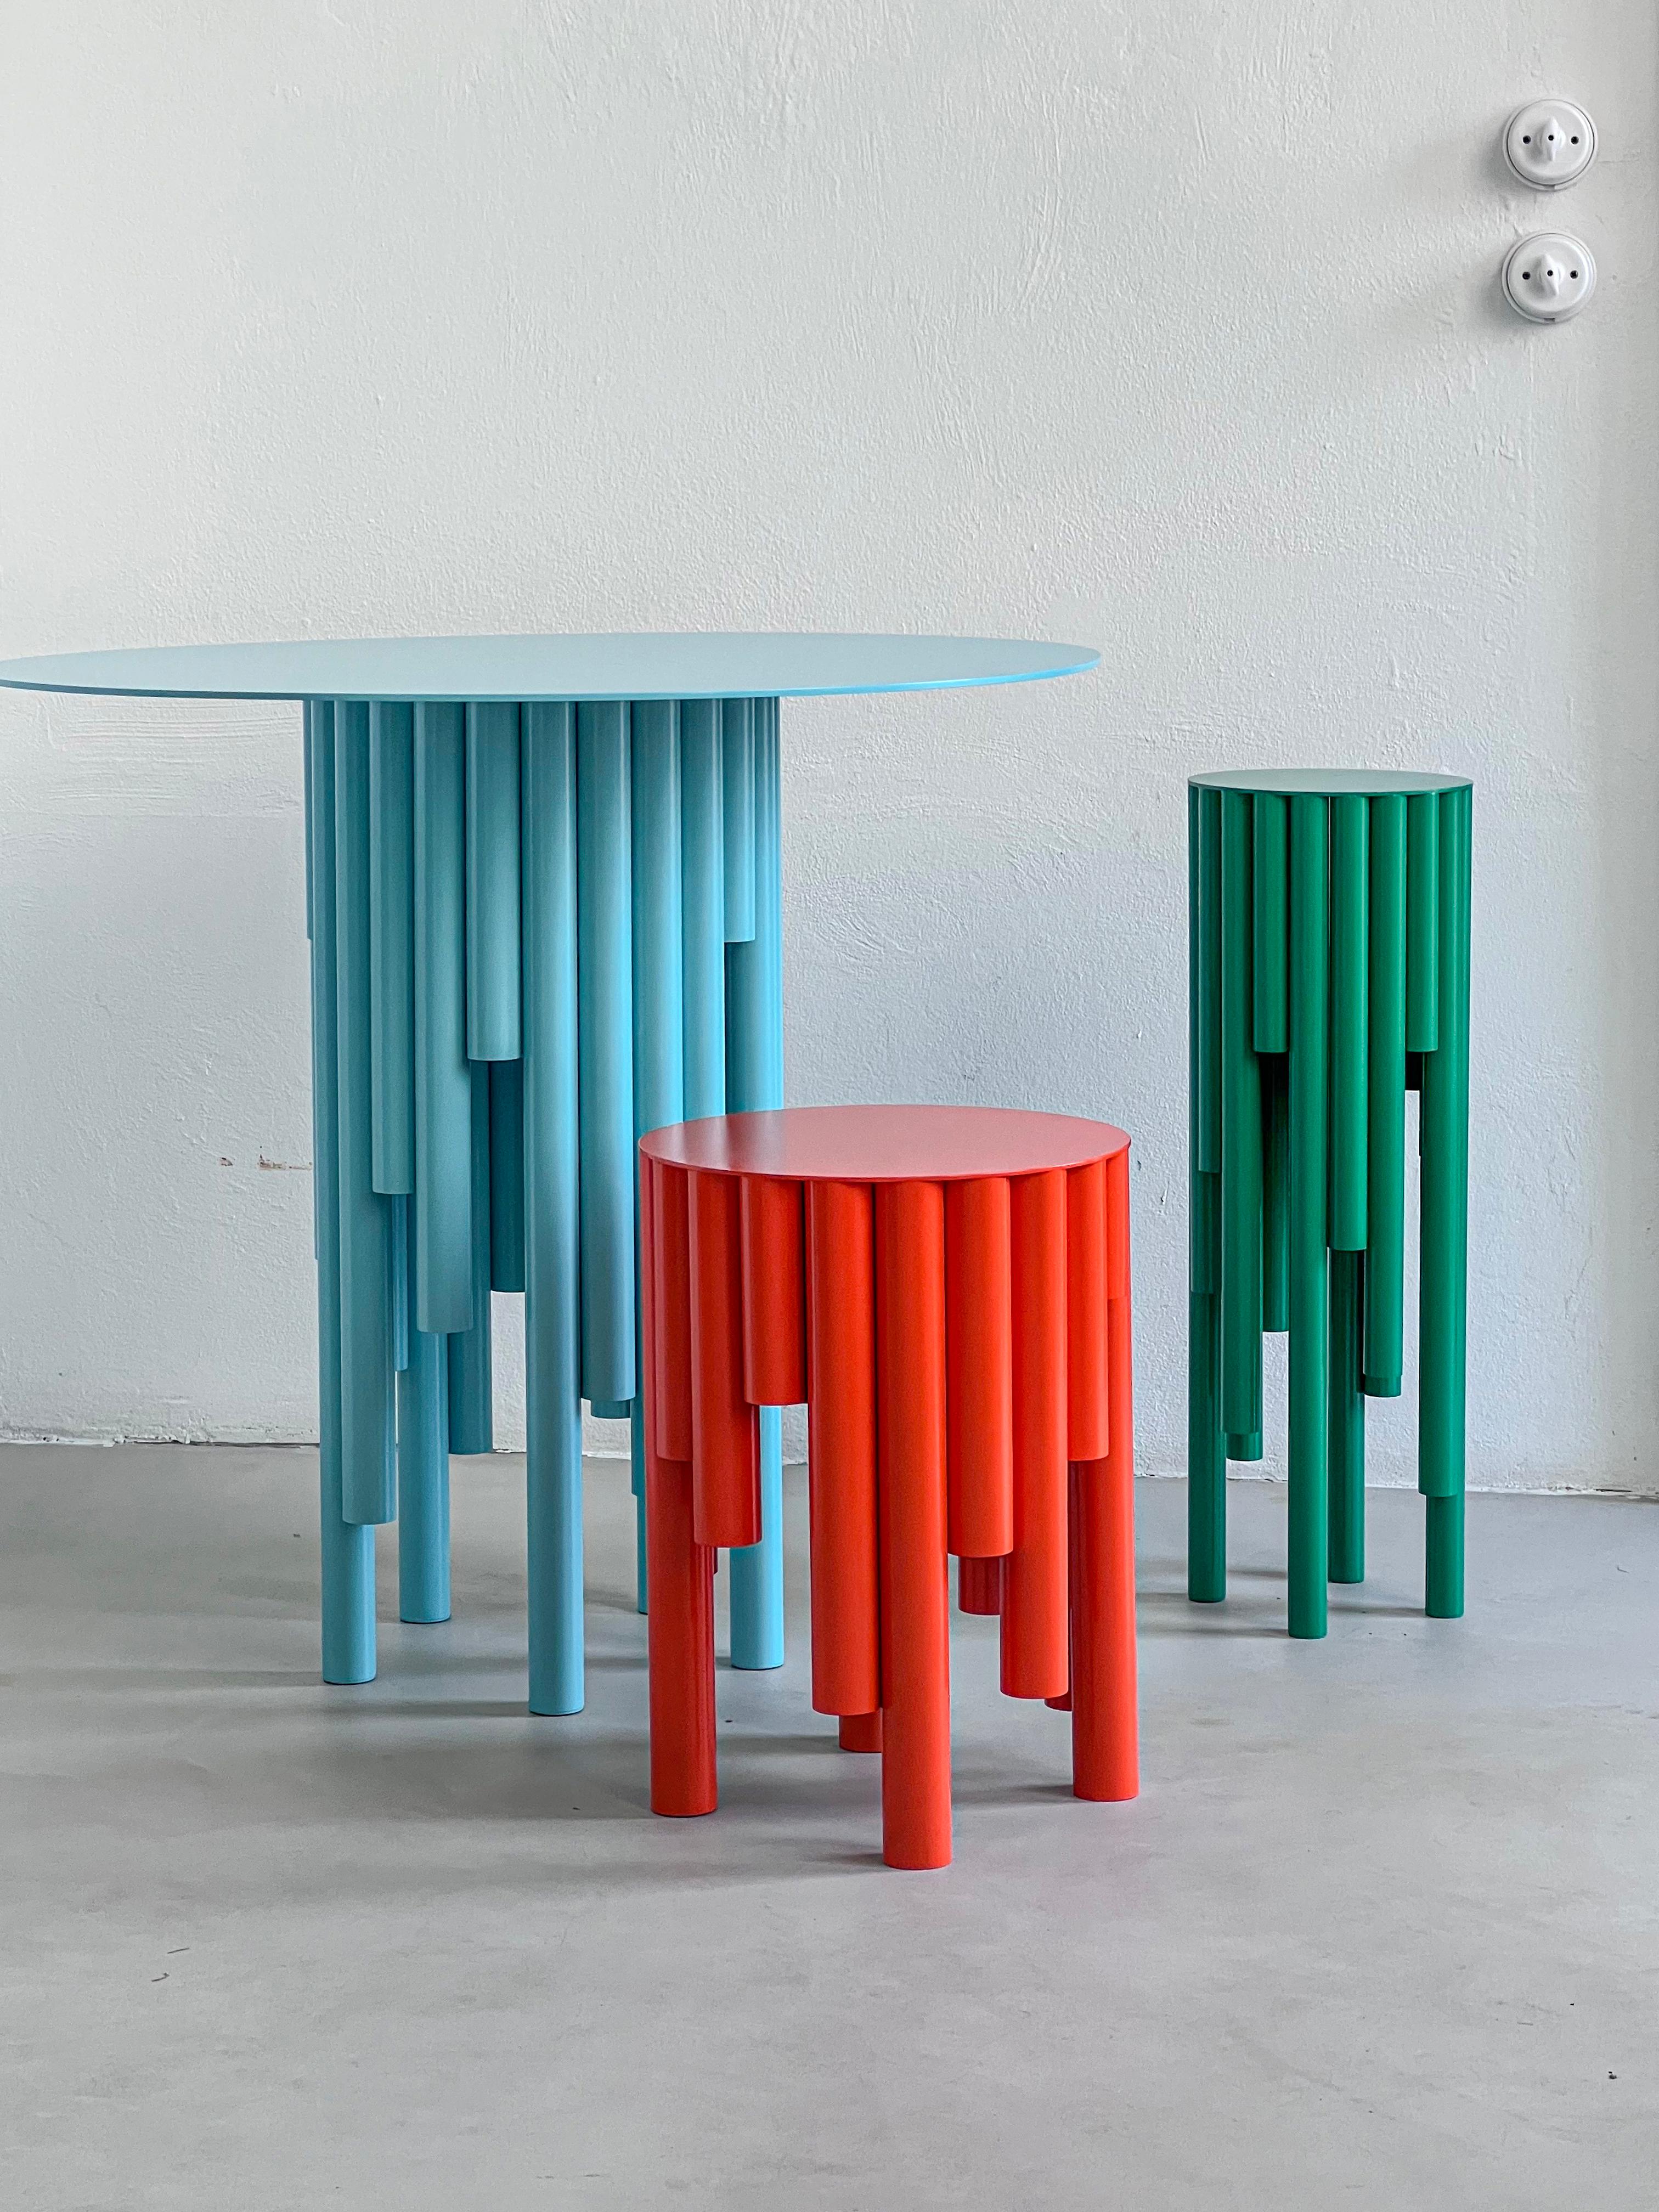 Architektonischer Beistelltisch - Skulpturaler Beistelltisch - Zeitgenössischer Collectional-Tisch

Dieser Beistelltisch wurde anlässlich der Milano Design Week 2024 vorgestellt und ist Teil der neuesten Kollektion von Spinzi, Circus. Die von der